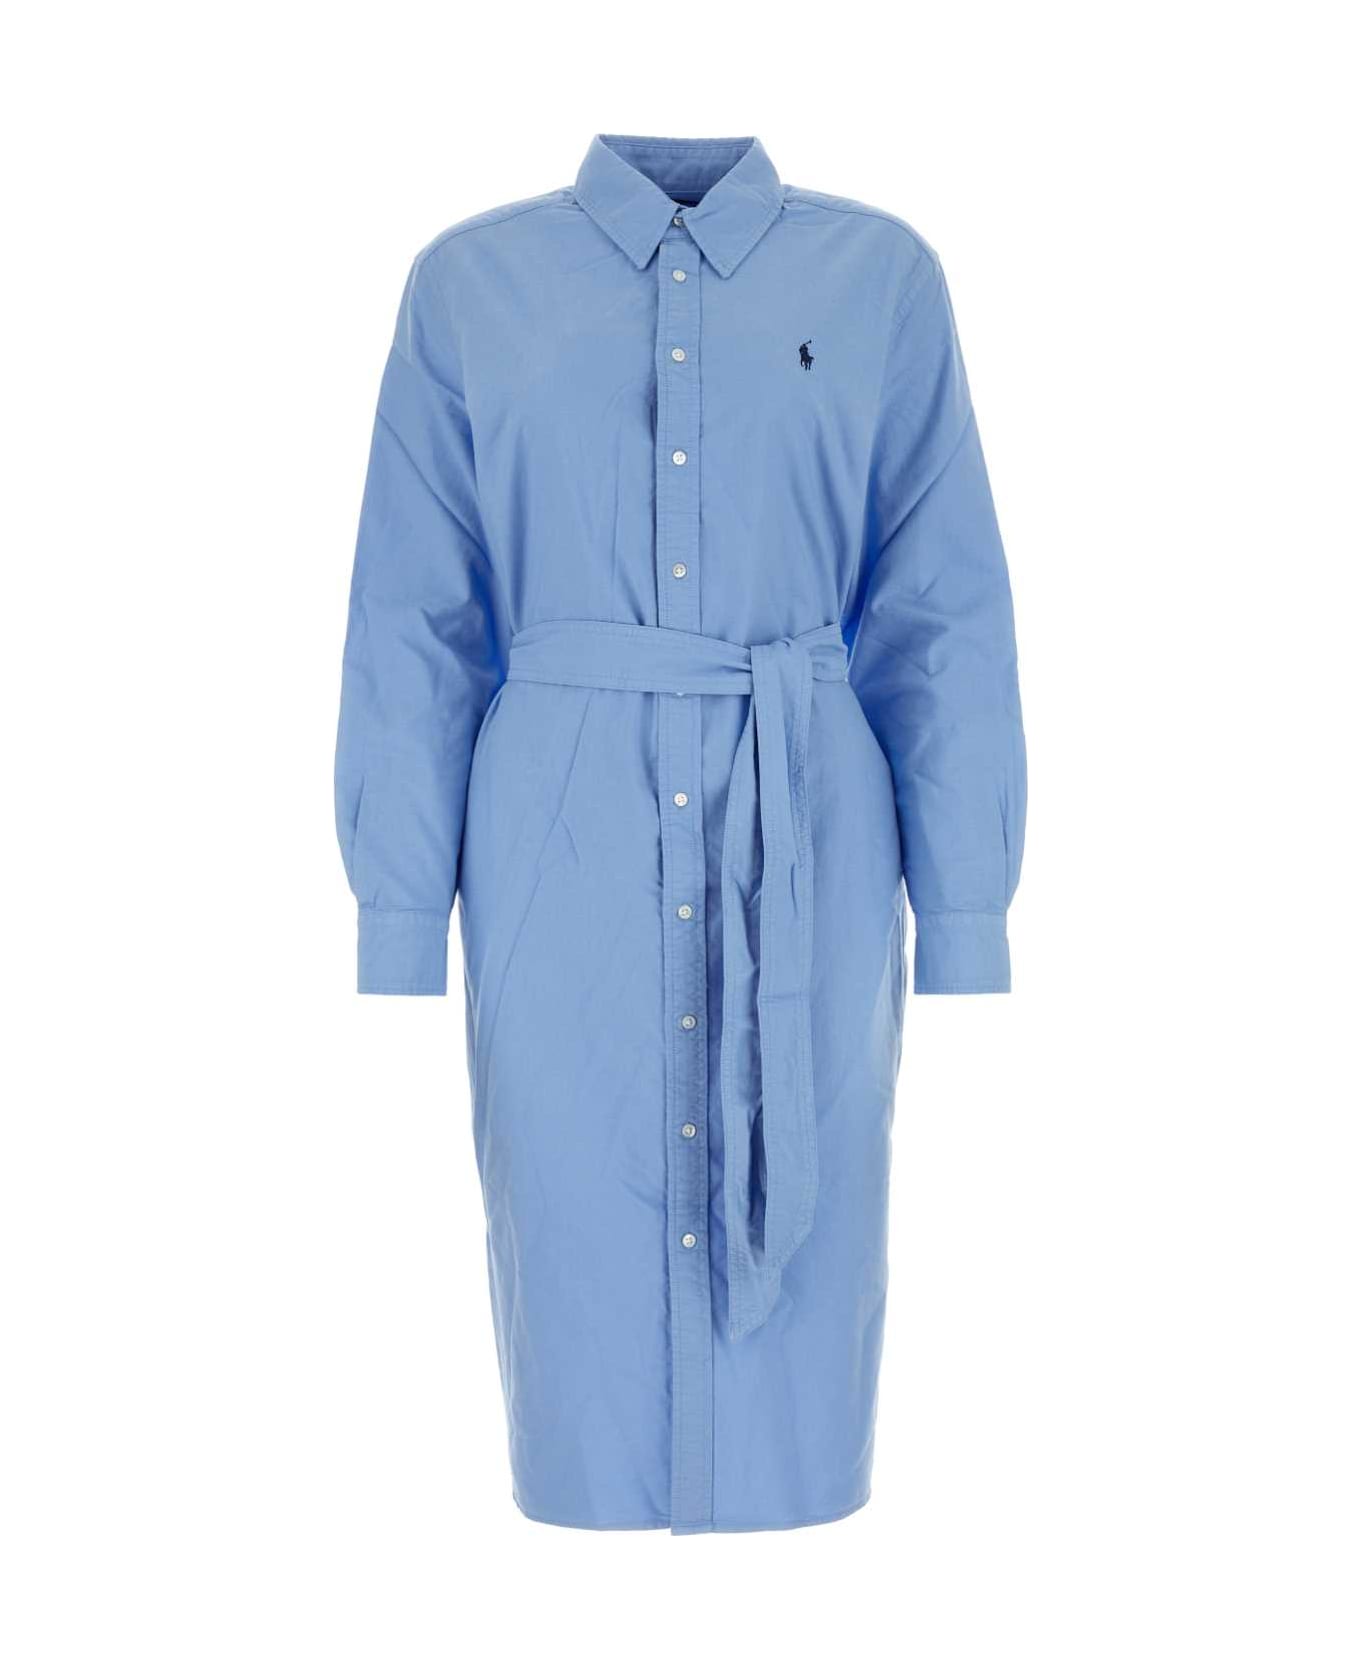 Polo Ralph Lauren Cerulean Blue Oxford Shirt Dress - LIGHTBLUE